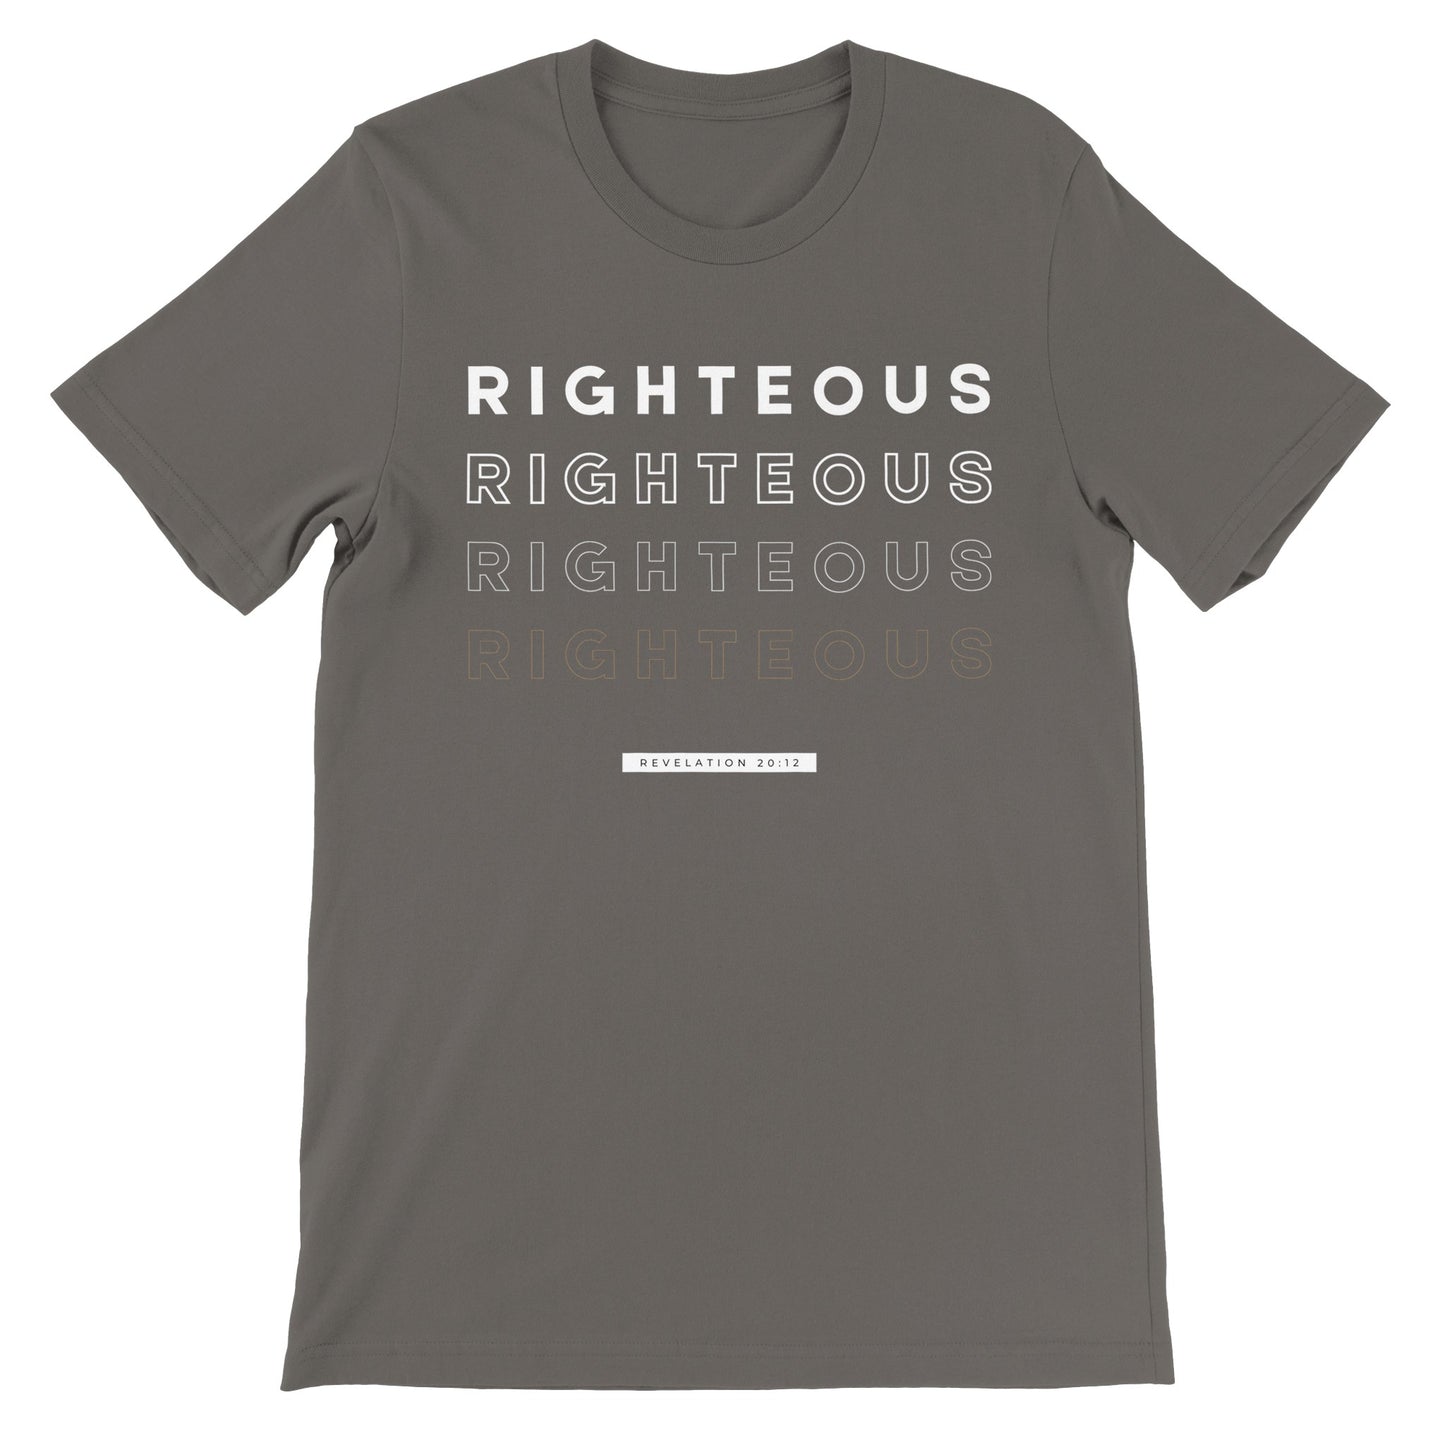 Righteous - Men's Crewneck T-shirt